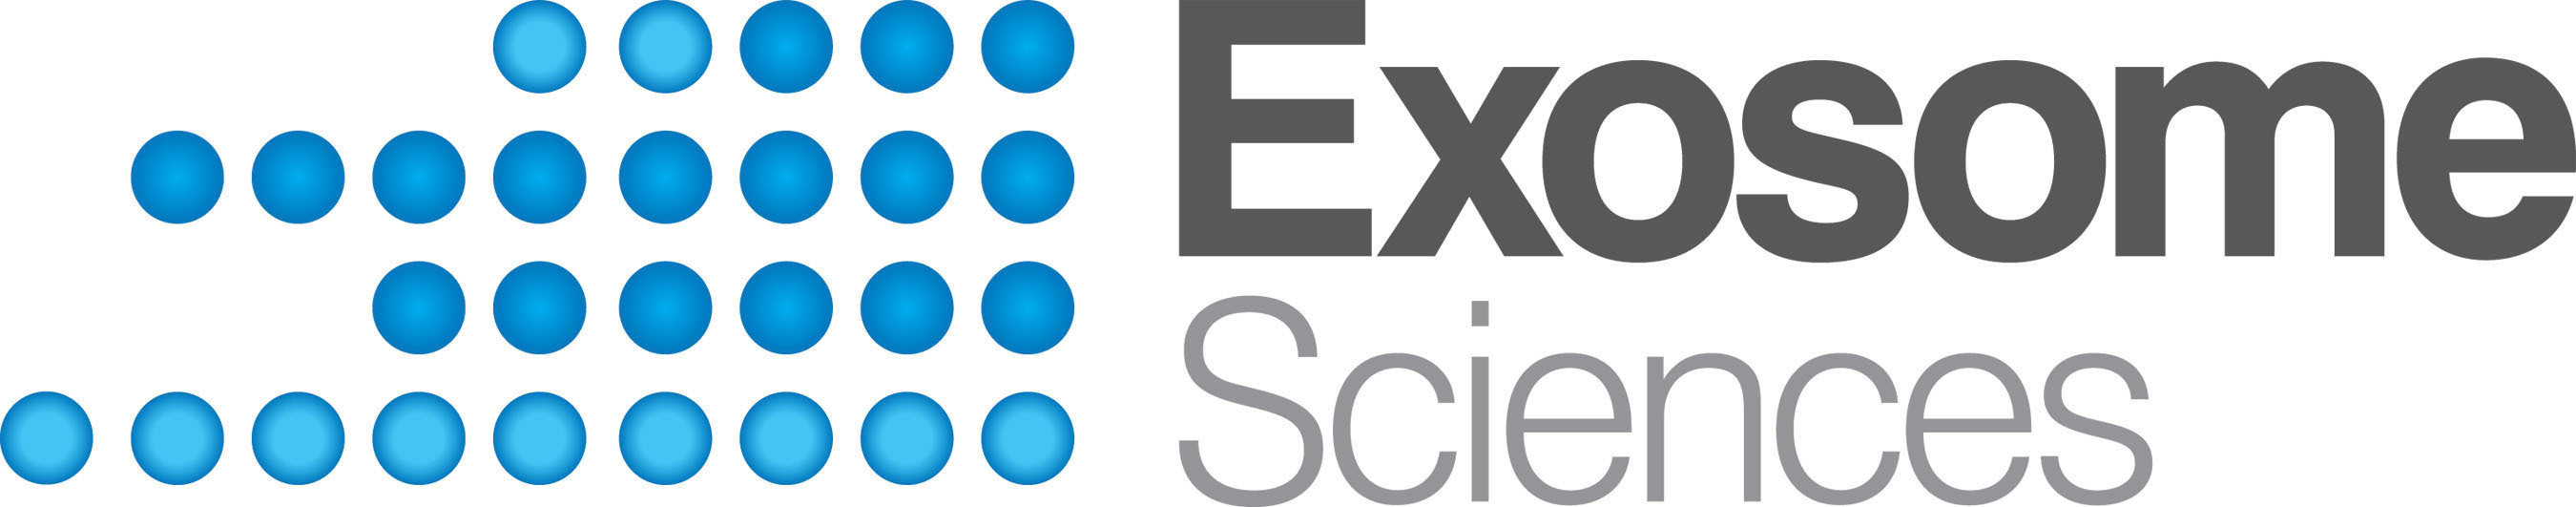 ESI Logo. (PRNewsFoto/Aethlon Medical, Inc.) (PRNewsFoto/)